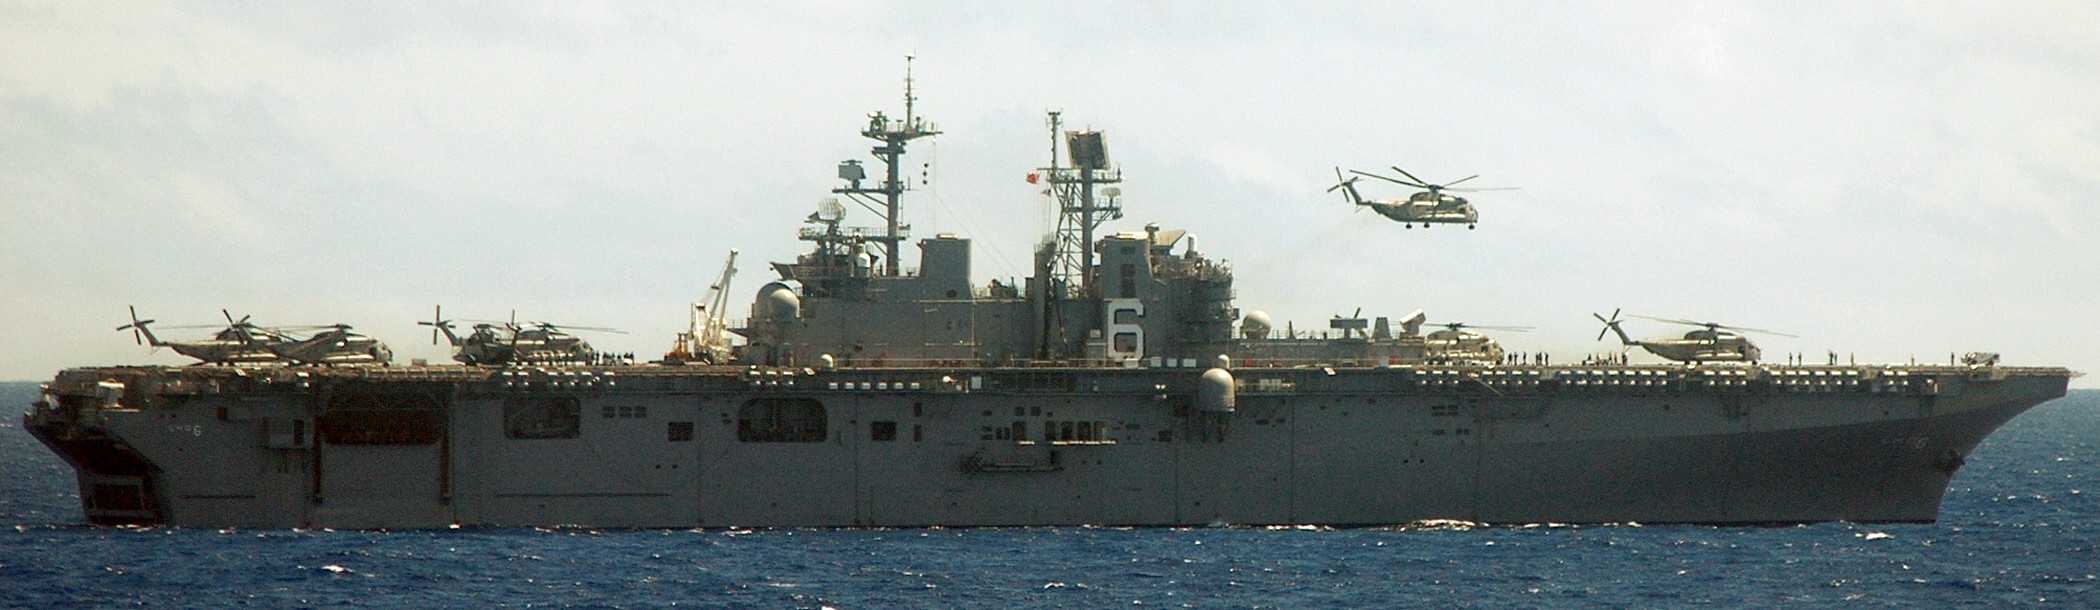 lhd-6 uss bonhomme richard amphibious assault ship landing helicopter dock wasp class 213